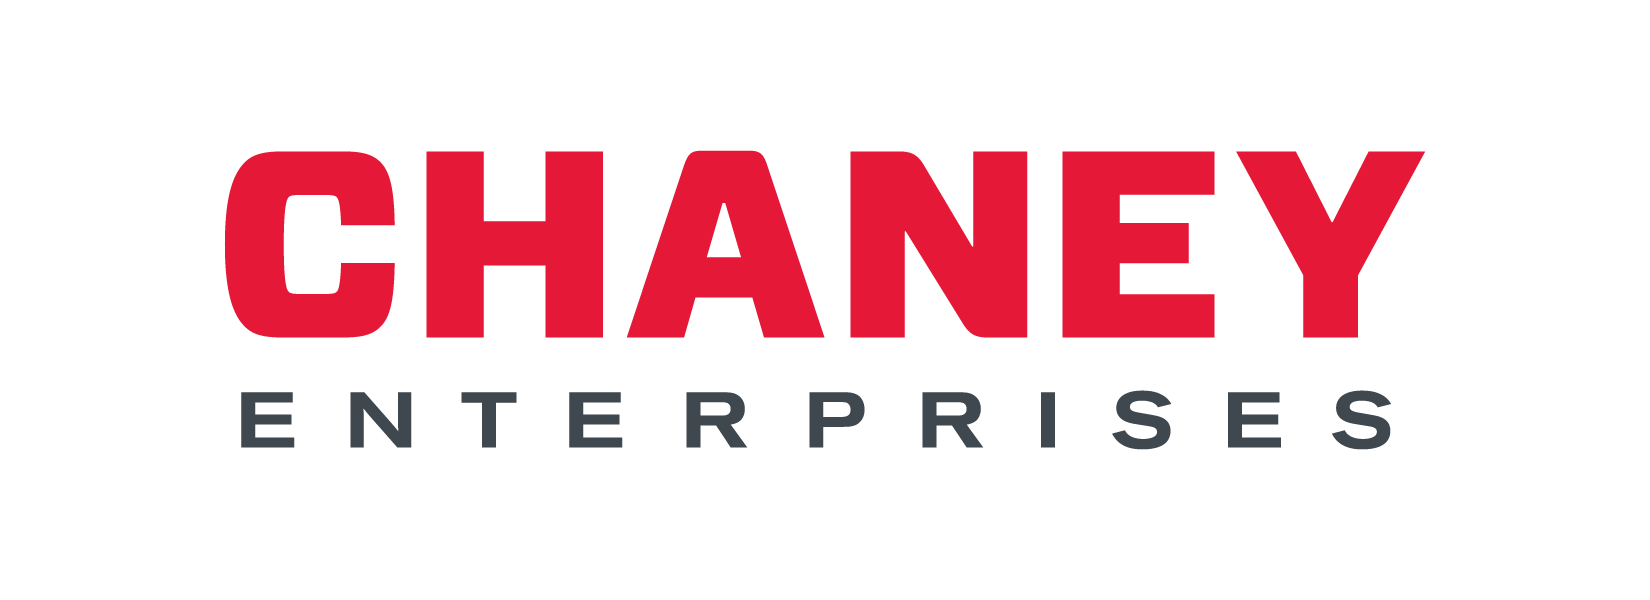 Chaney Enterprises Logo